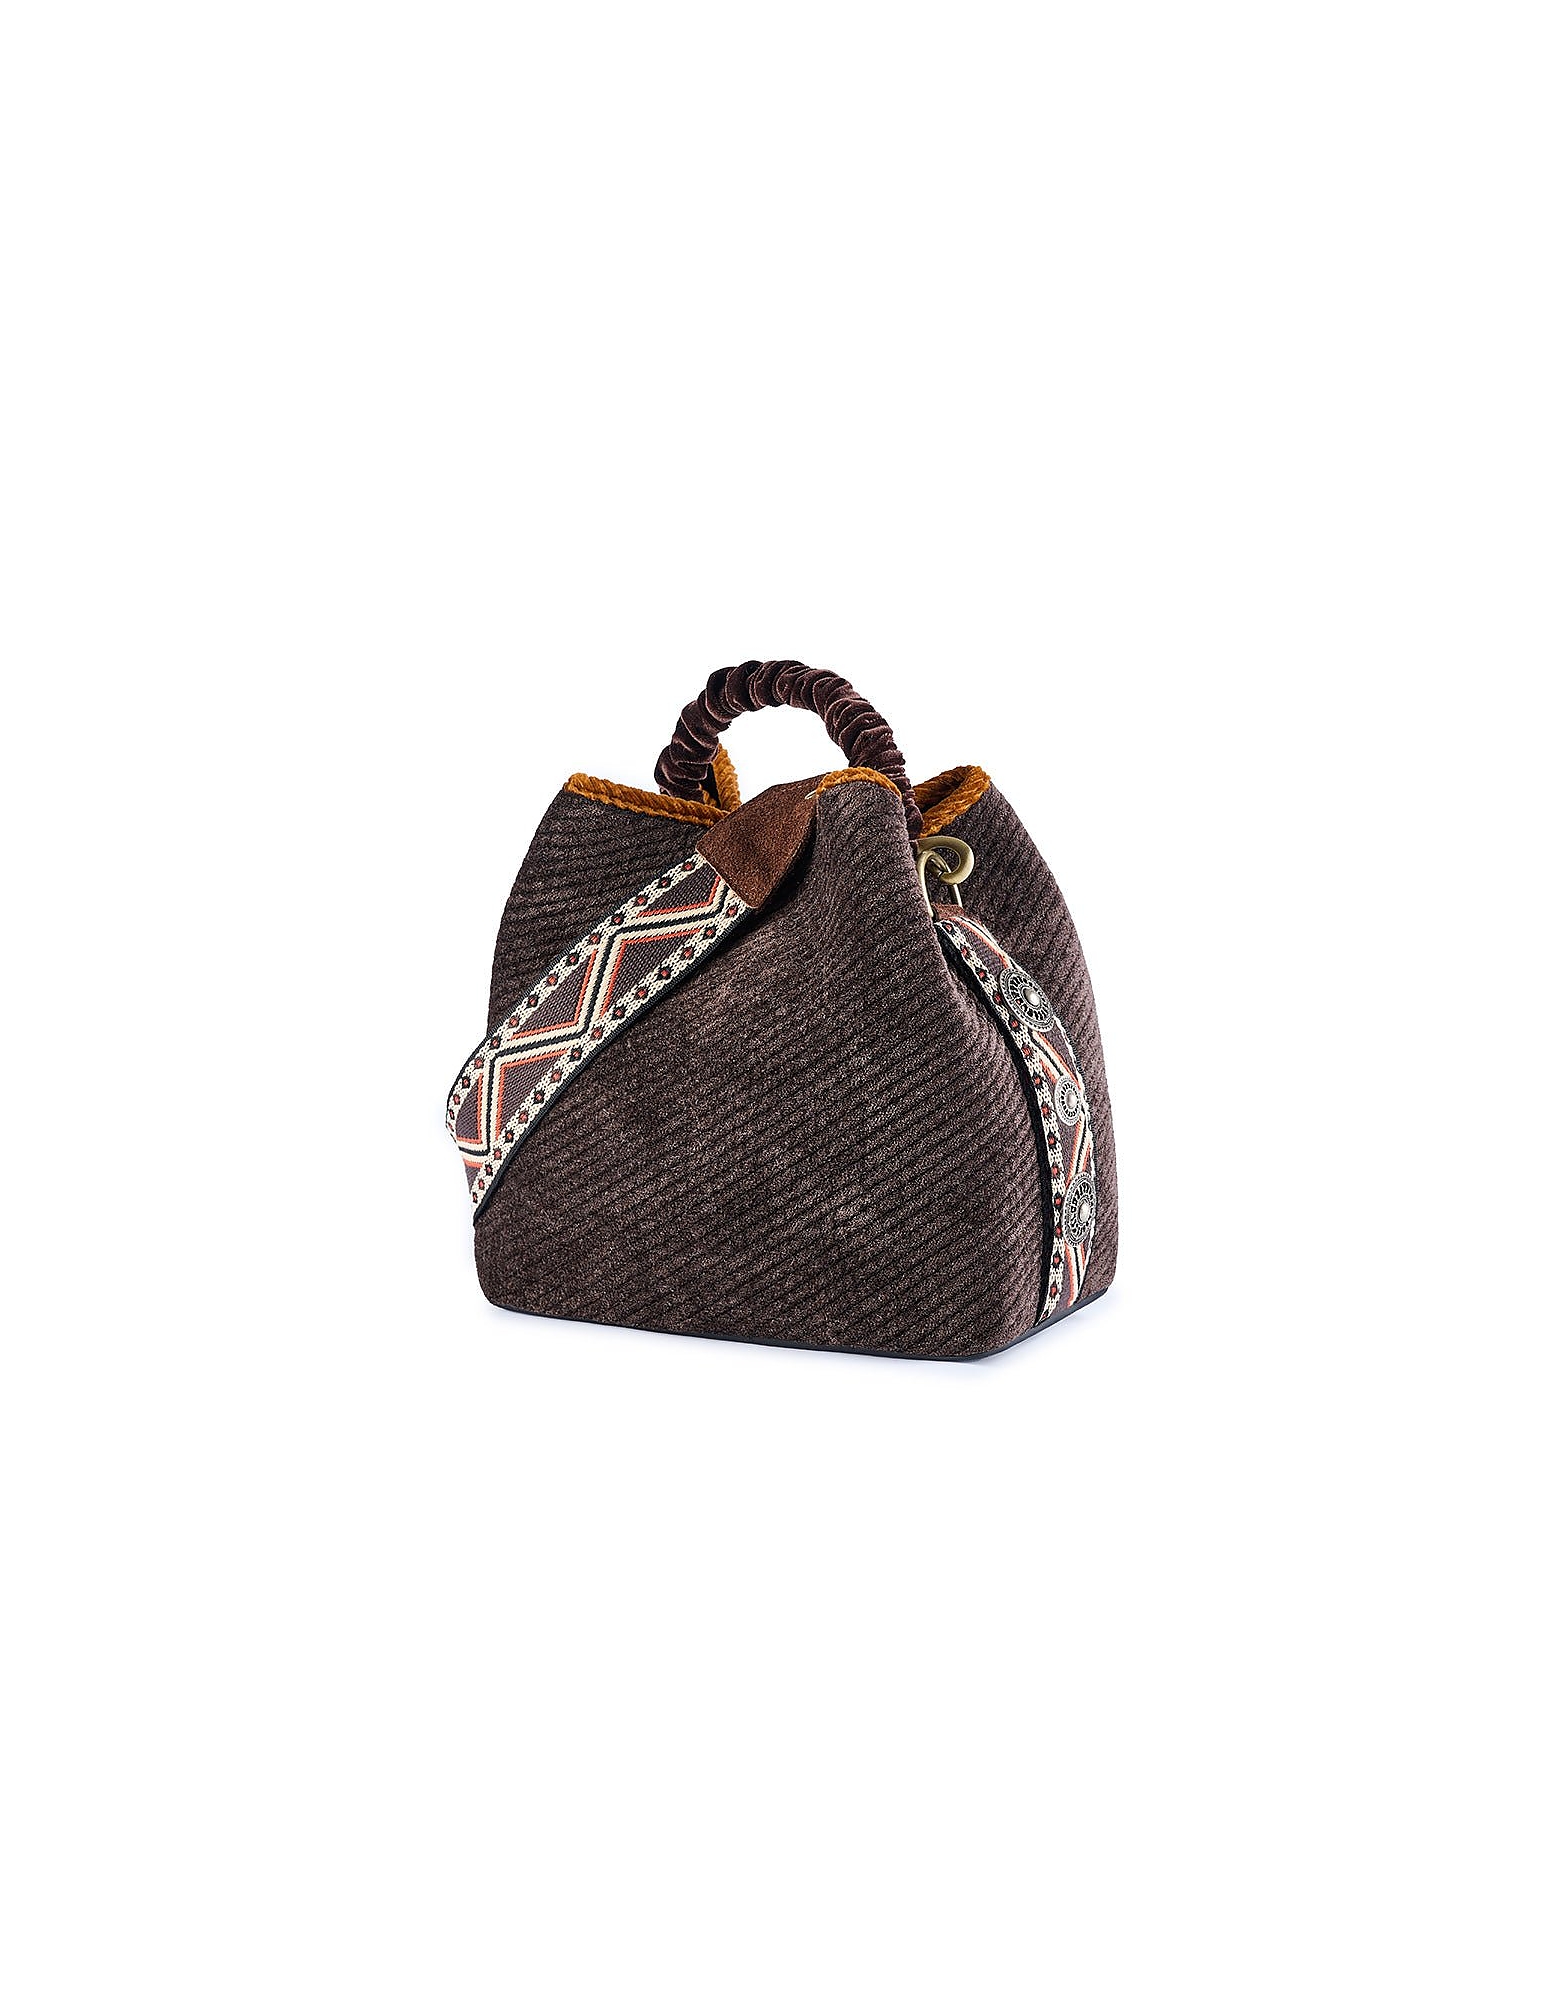 Viamailbag Designer Handbags Coral Stone - Bucket Bag In Marron